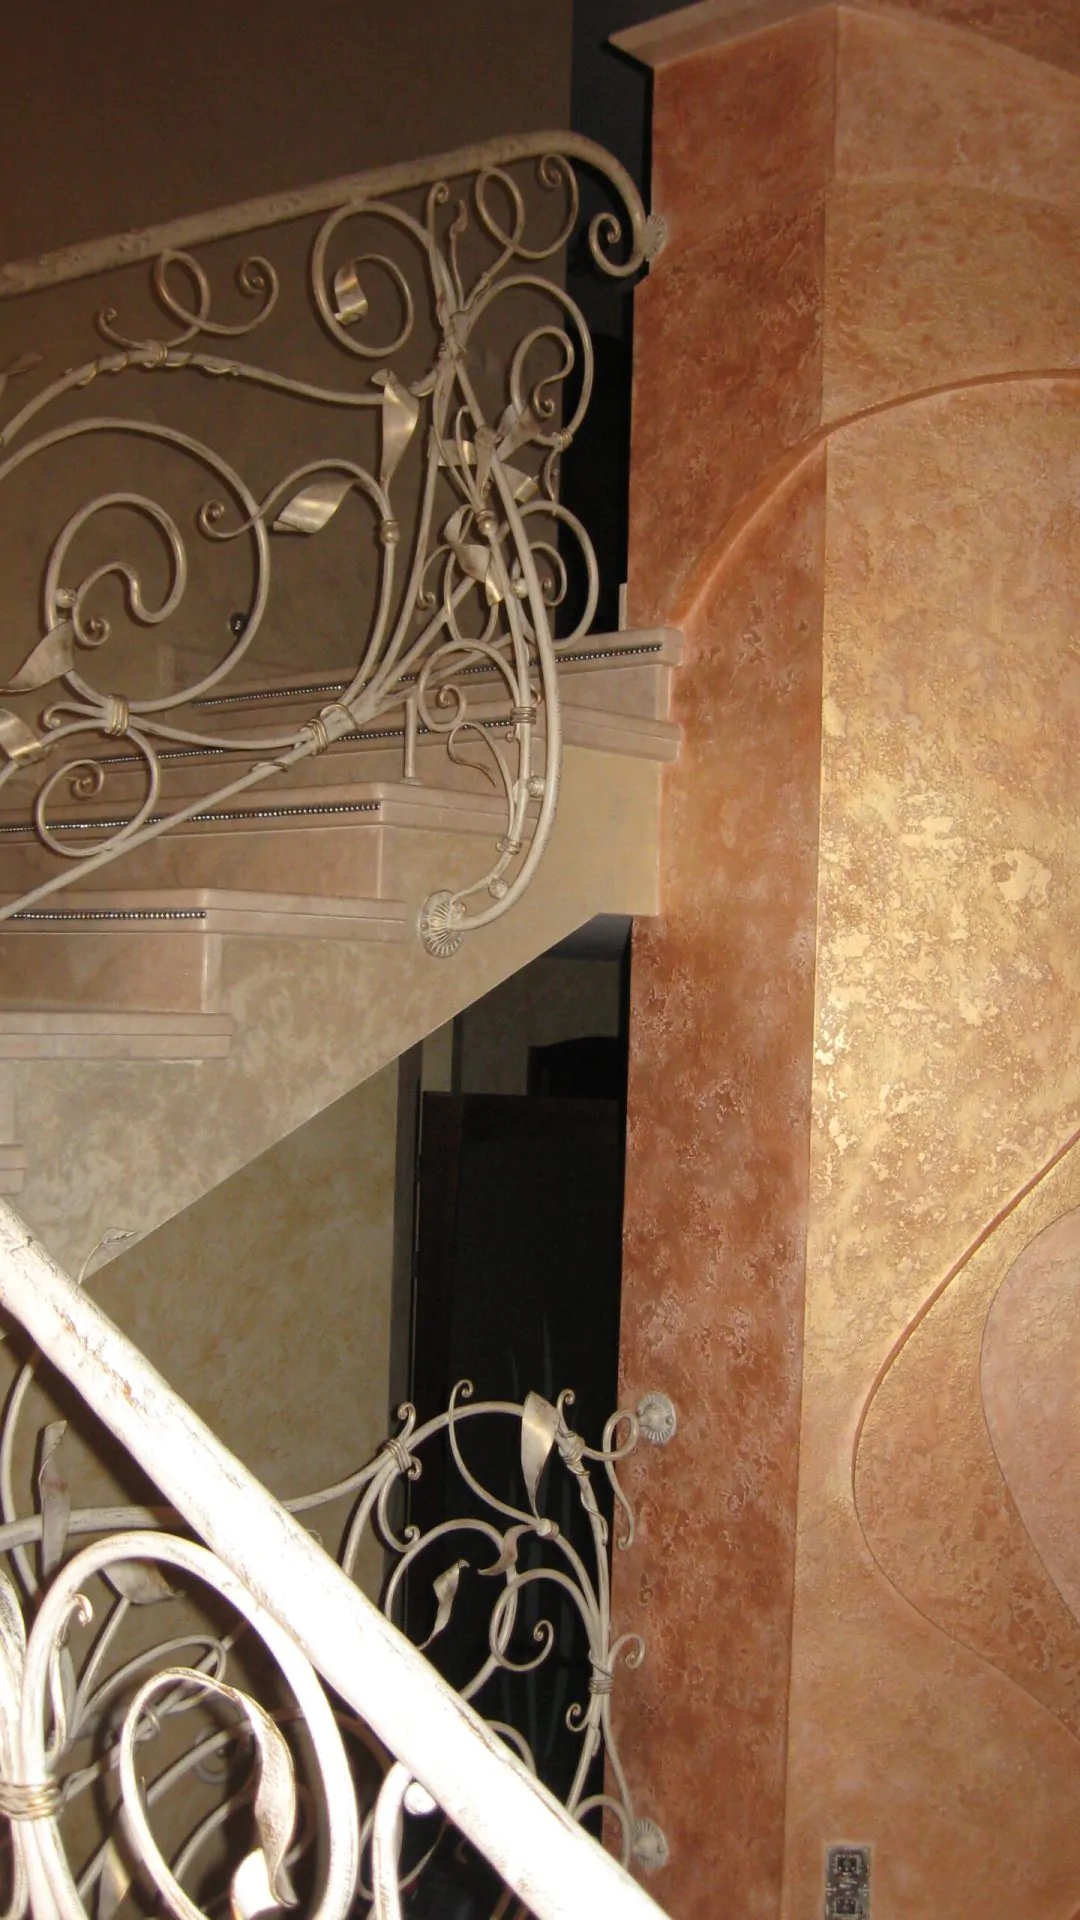 Інтер’єр квартири приватного будинку з декоративною венеціанською штукатуркою